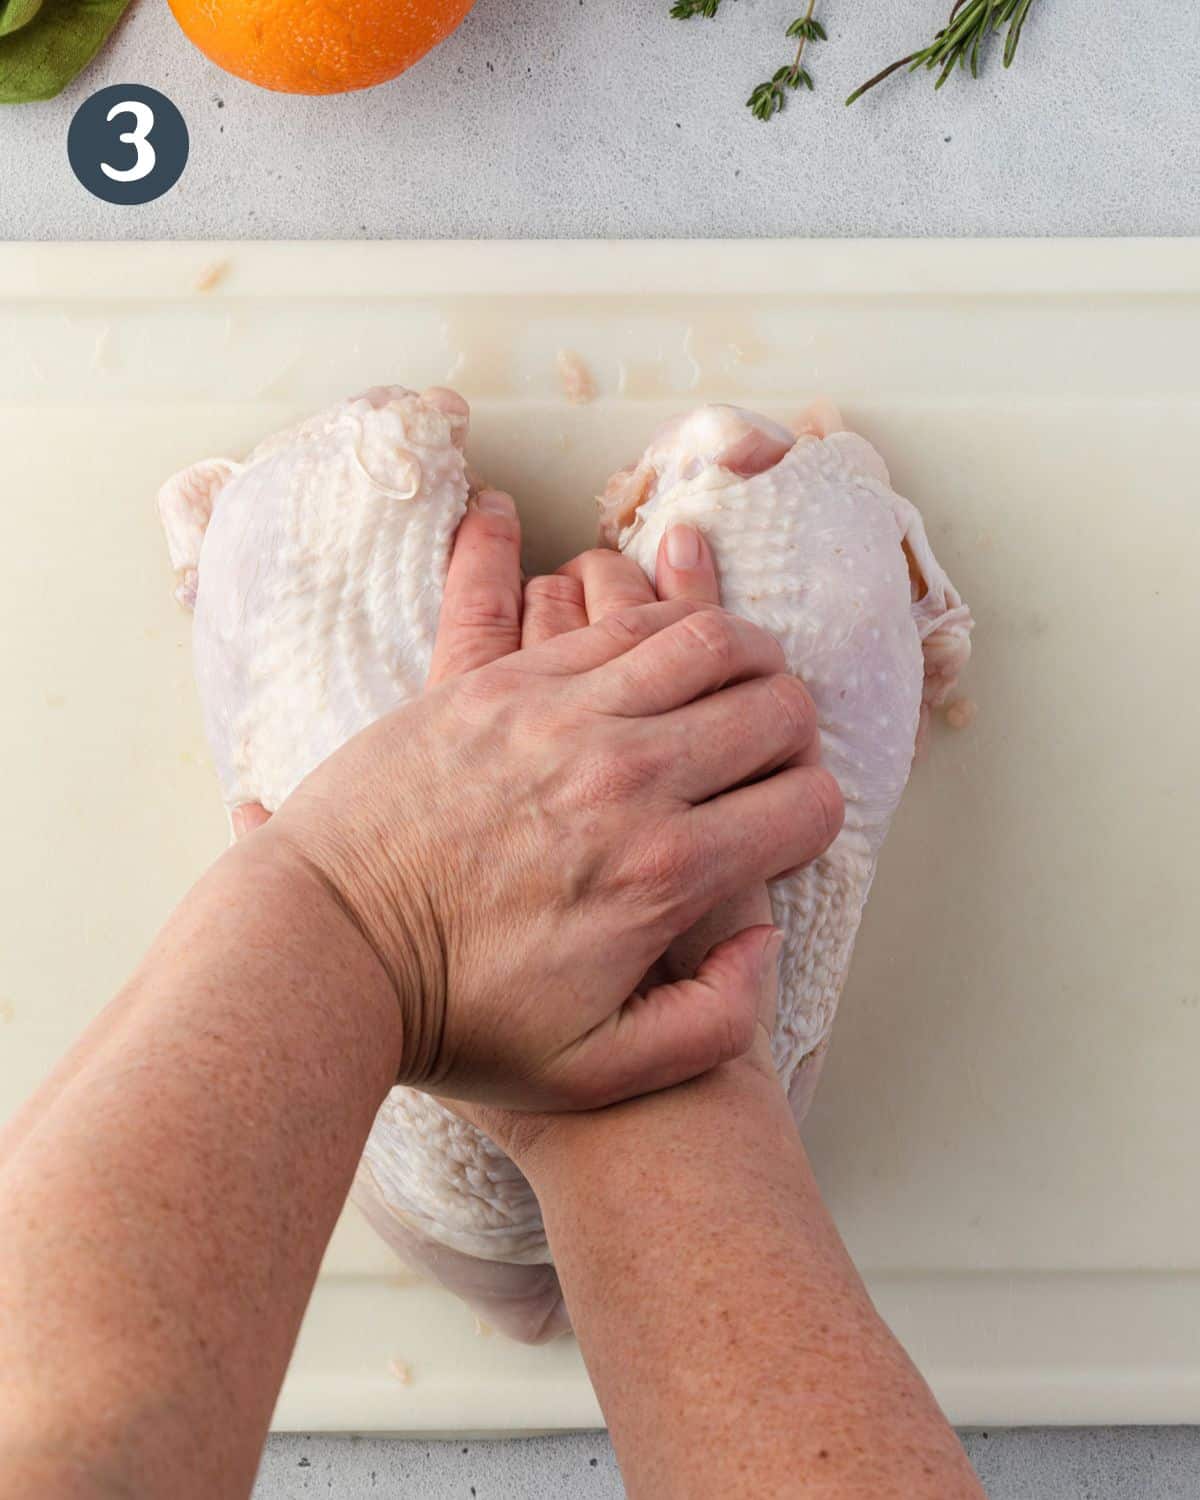 Pressing down on raw turkey breast to crack bone.